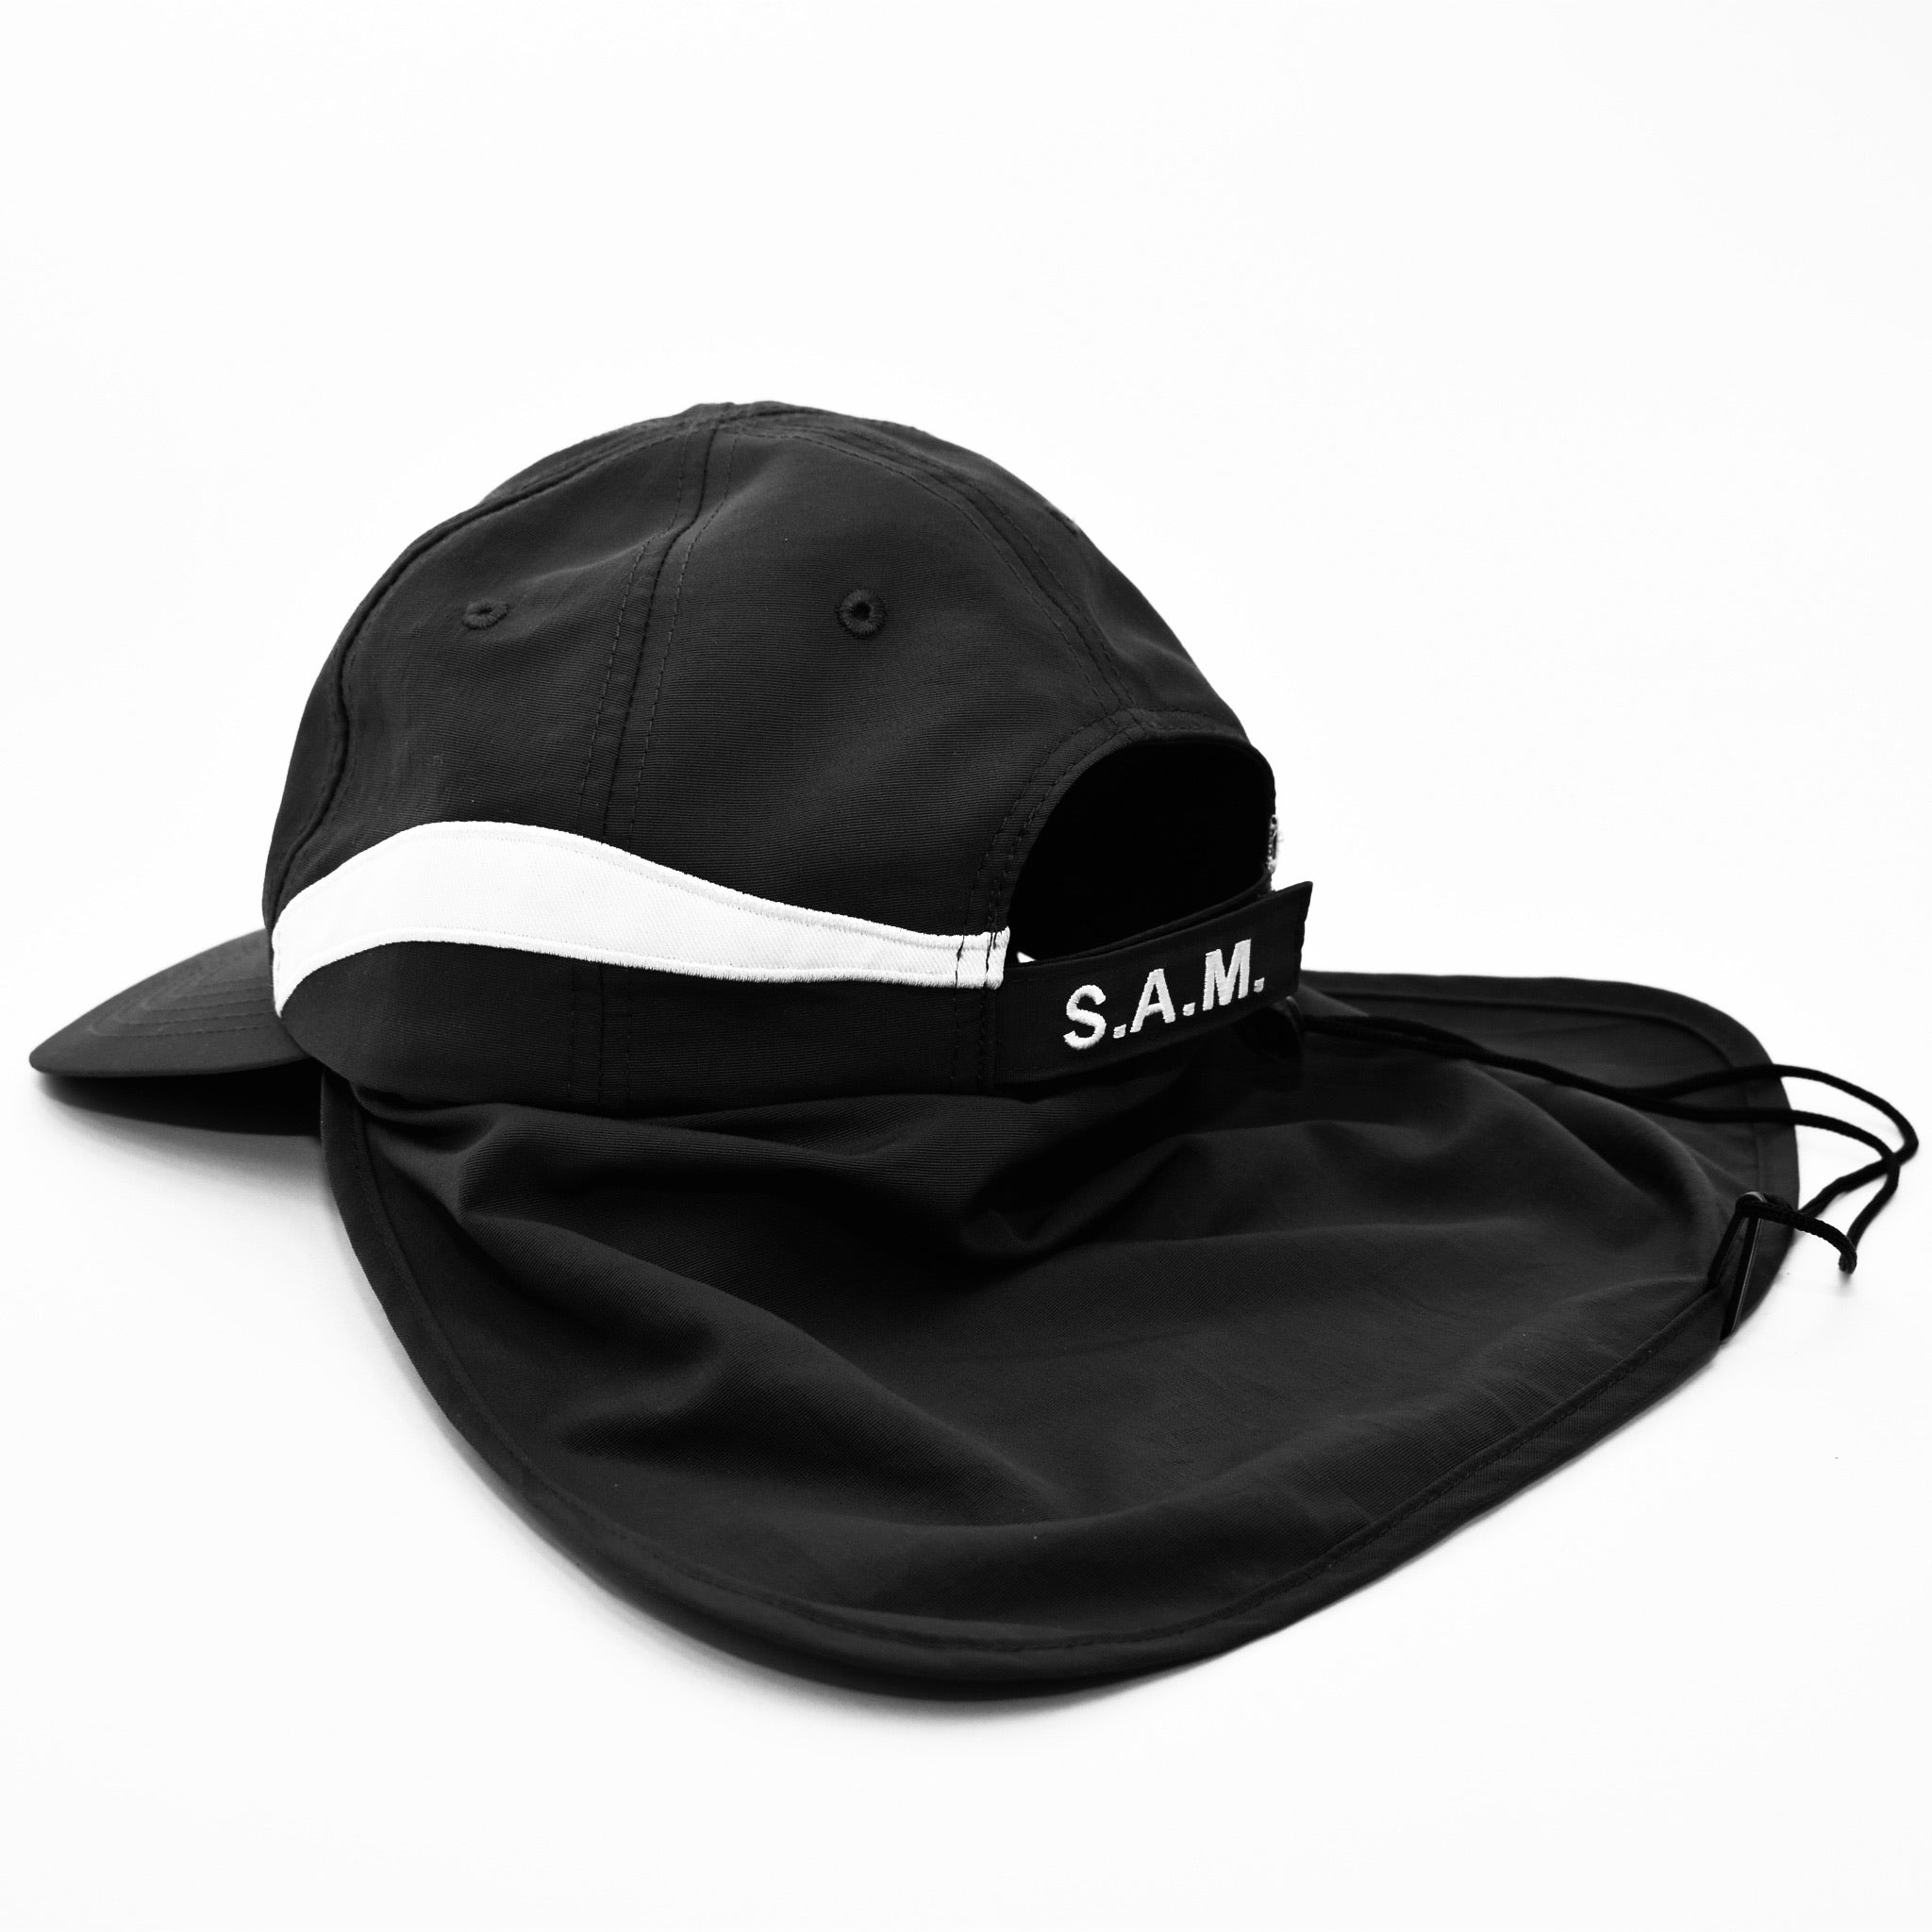 water sports Surf hat upf50+ sun protective fabric / shade at motion –  Shade At Motion